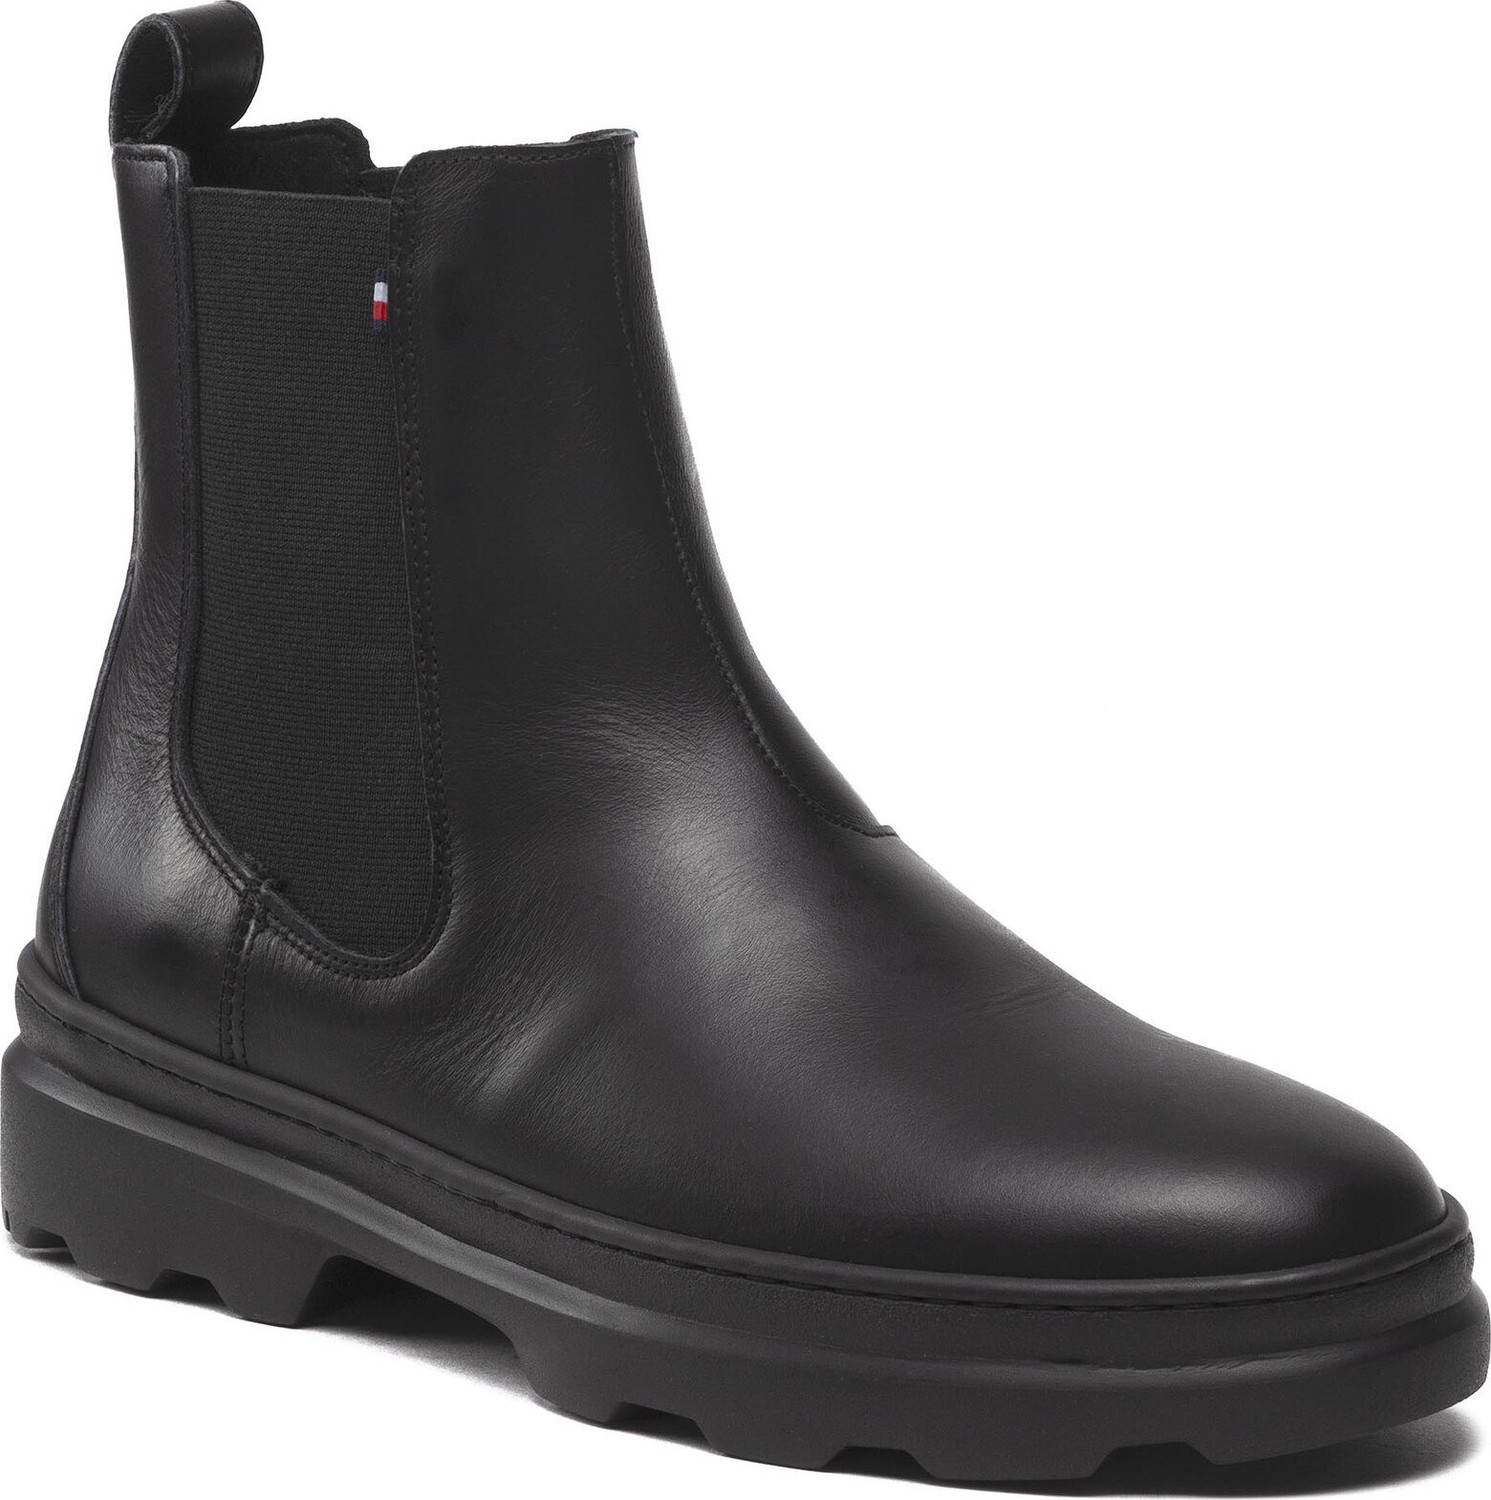 Kotníková obuv s elastickým prvkem Tommy Hilfiger Comfort Hilfiger Leather Chelsea FM0FM04193 Black BDS